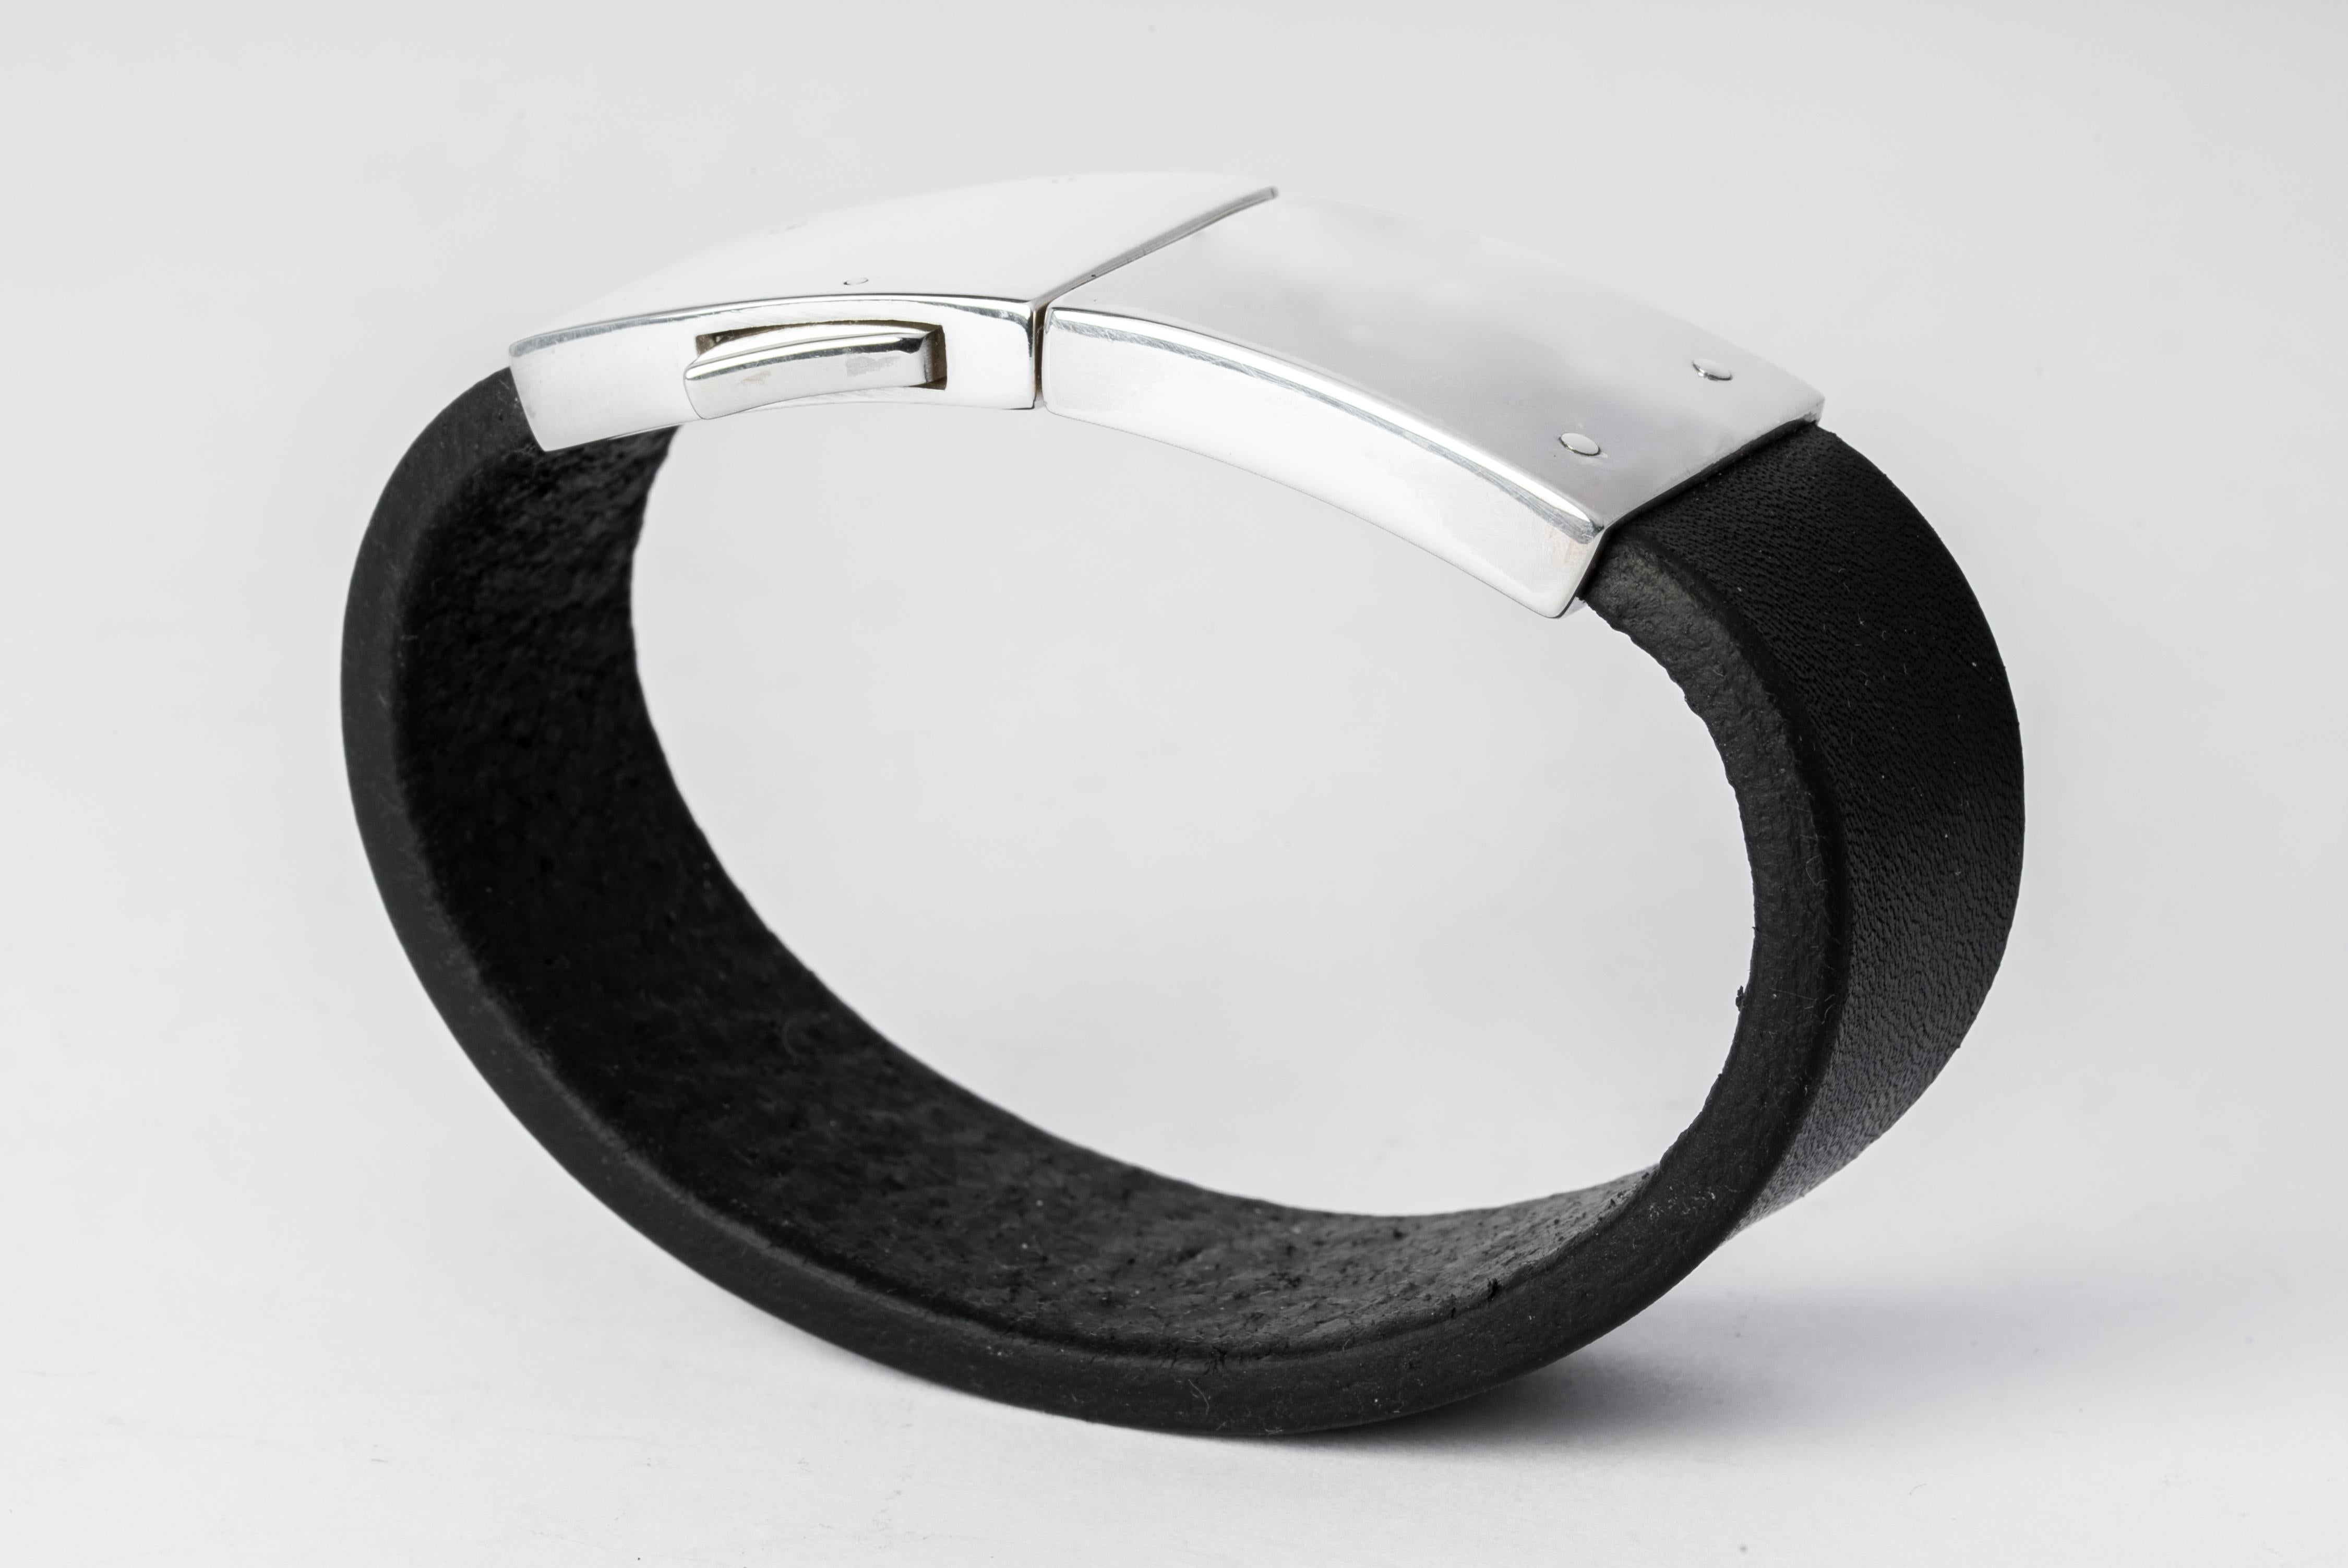 Armband aus schwarzem Büffelleder und poliertem Sterlingsilber.
Abmessungen:
Breite des Armbands: 25 mm
Gewicht: 80 Gramm